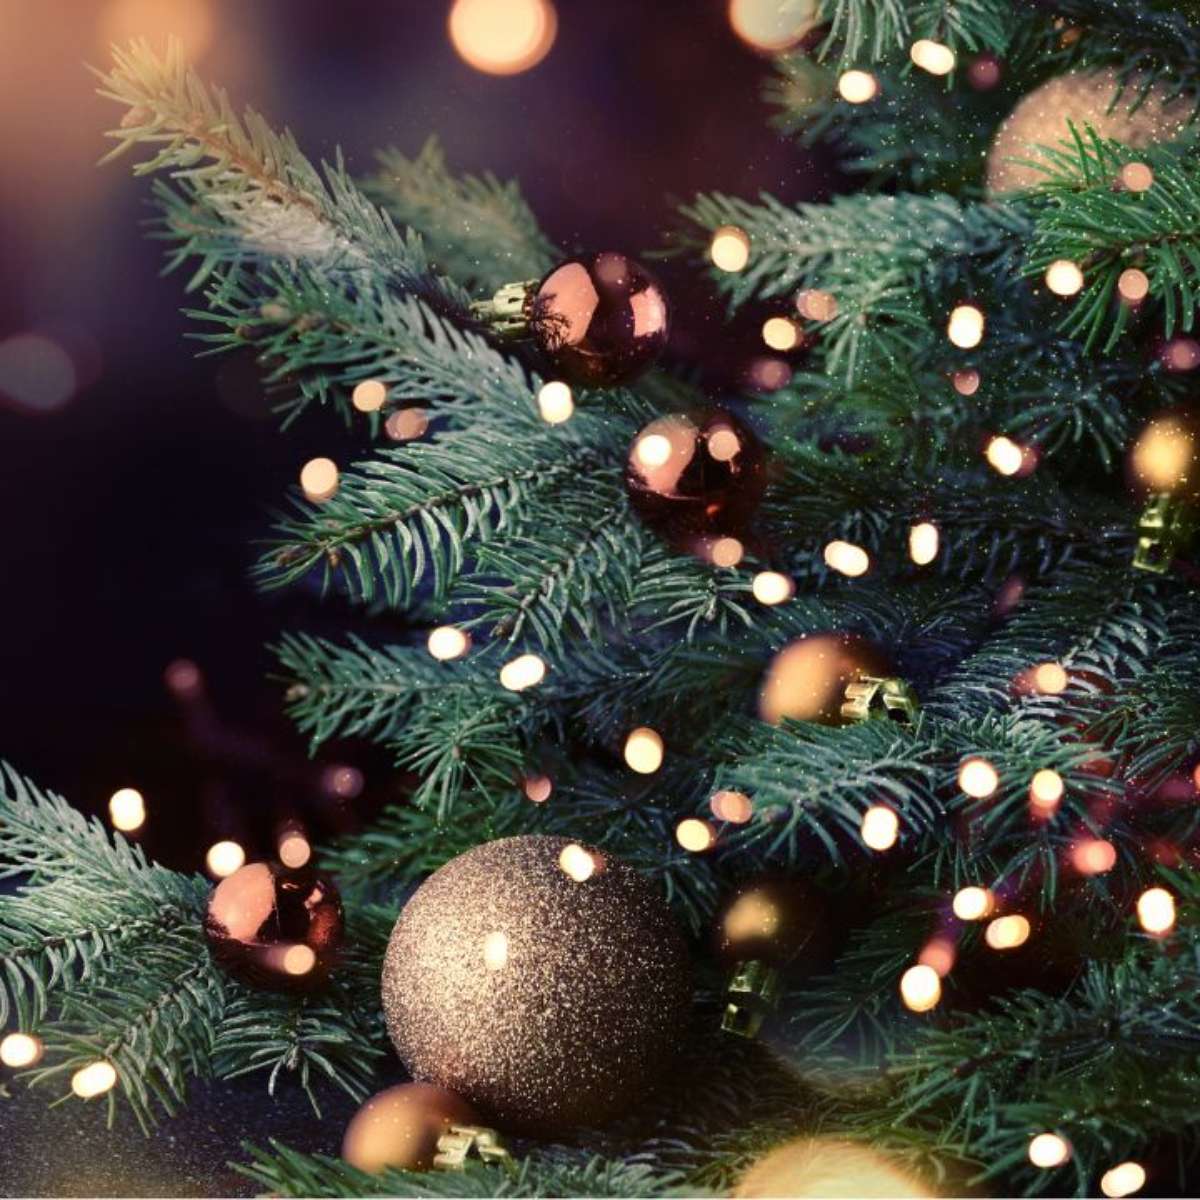 Quando montar a árvore de Natal em 2022? Veja a data indicada pela tradição  - Casa - Diário do Nordeste